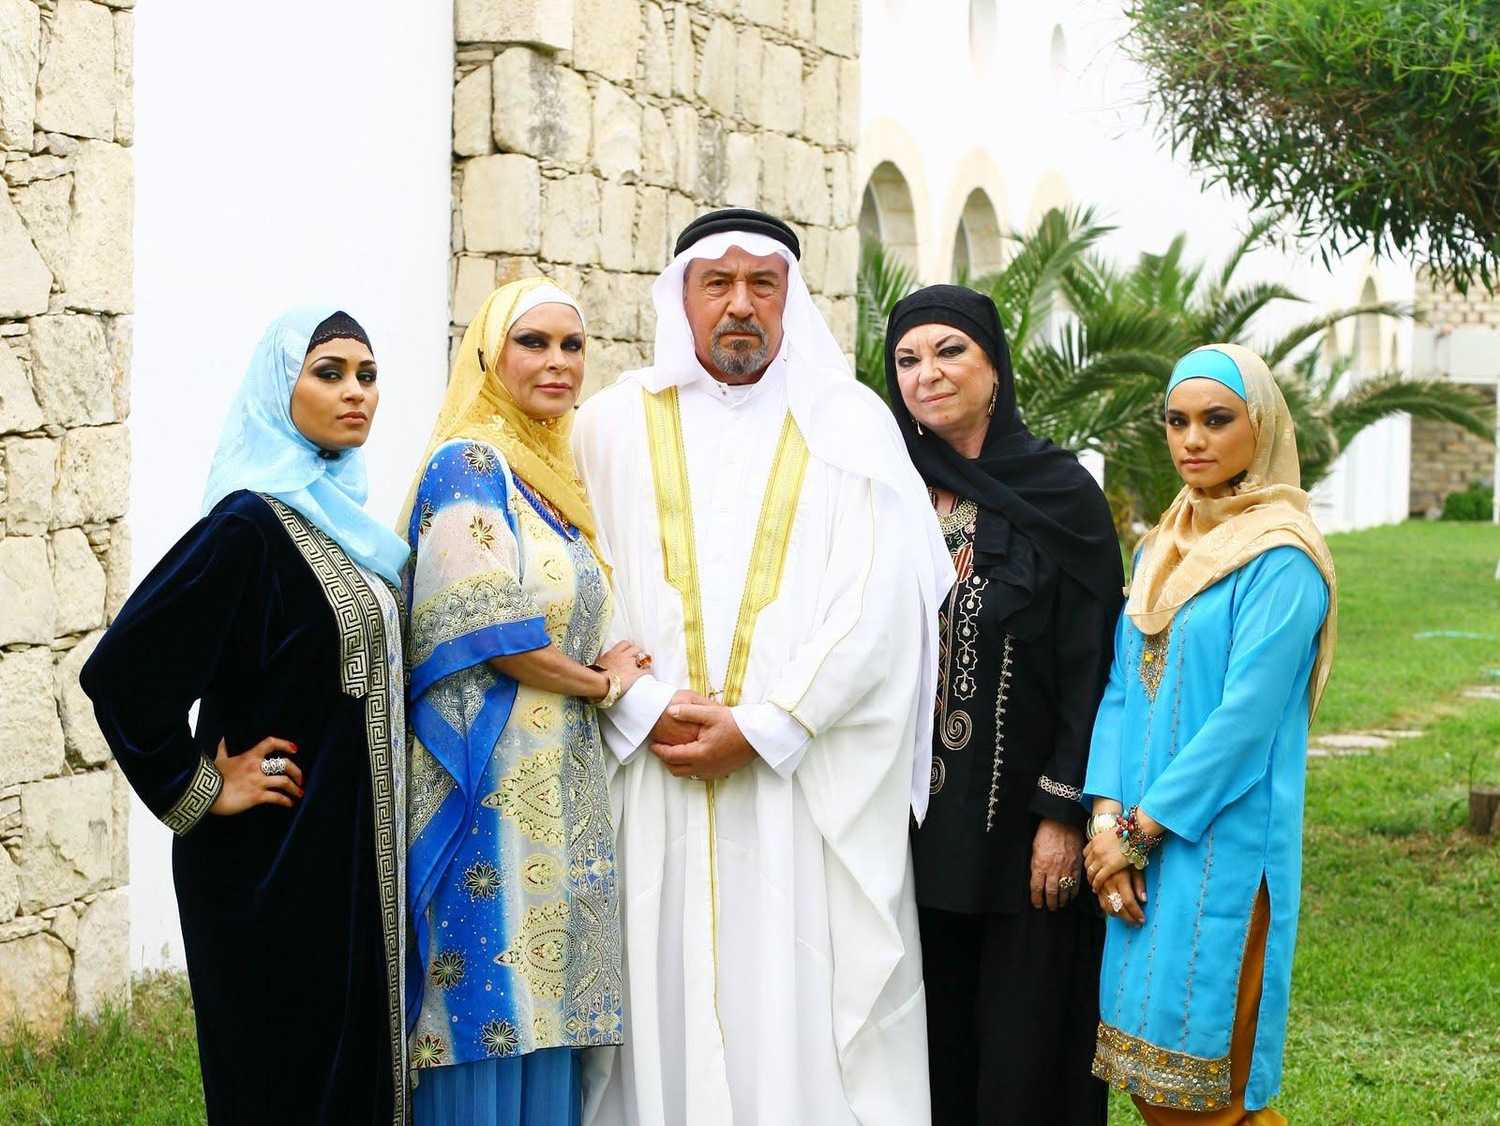 Про три жены. Мои восточные ночи 2010. Восточные мужчины и русские женщины. Арабы с женами. Жены арабских шейхов.